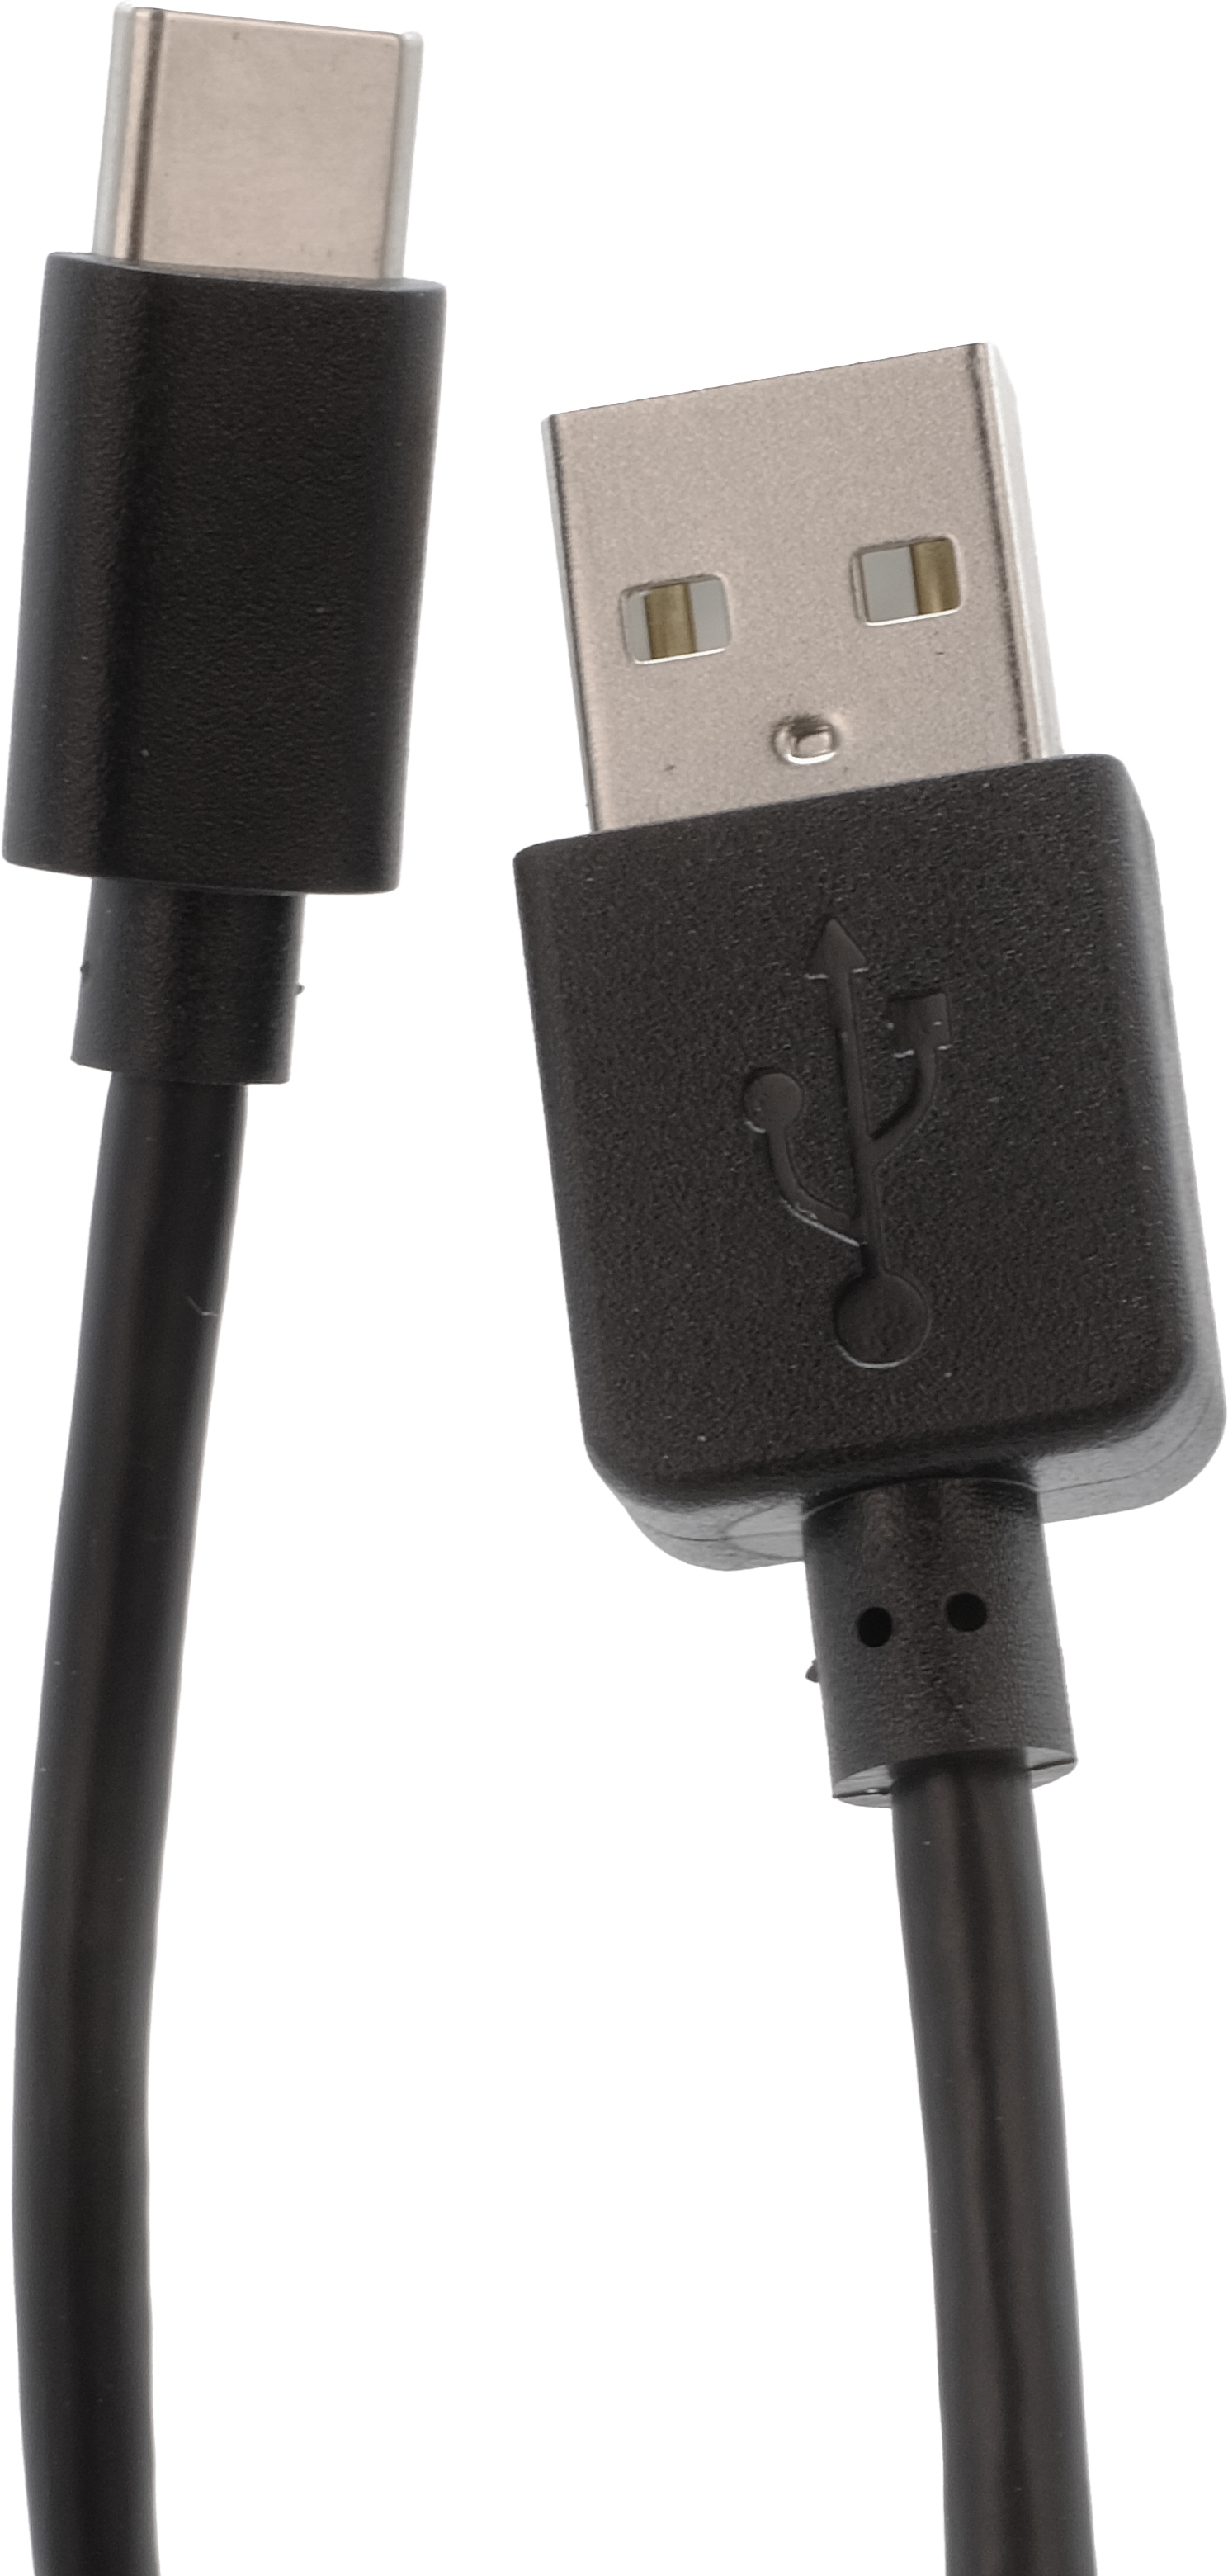 941014 Ladekabel von USB-A auf USB-C Anschluss 3